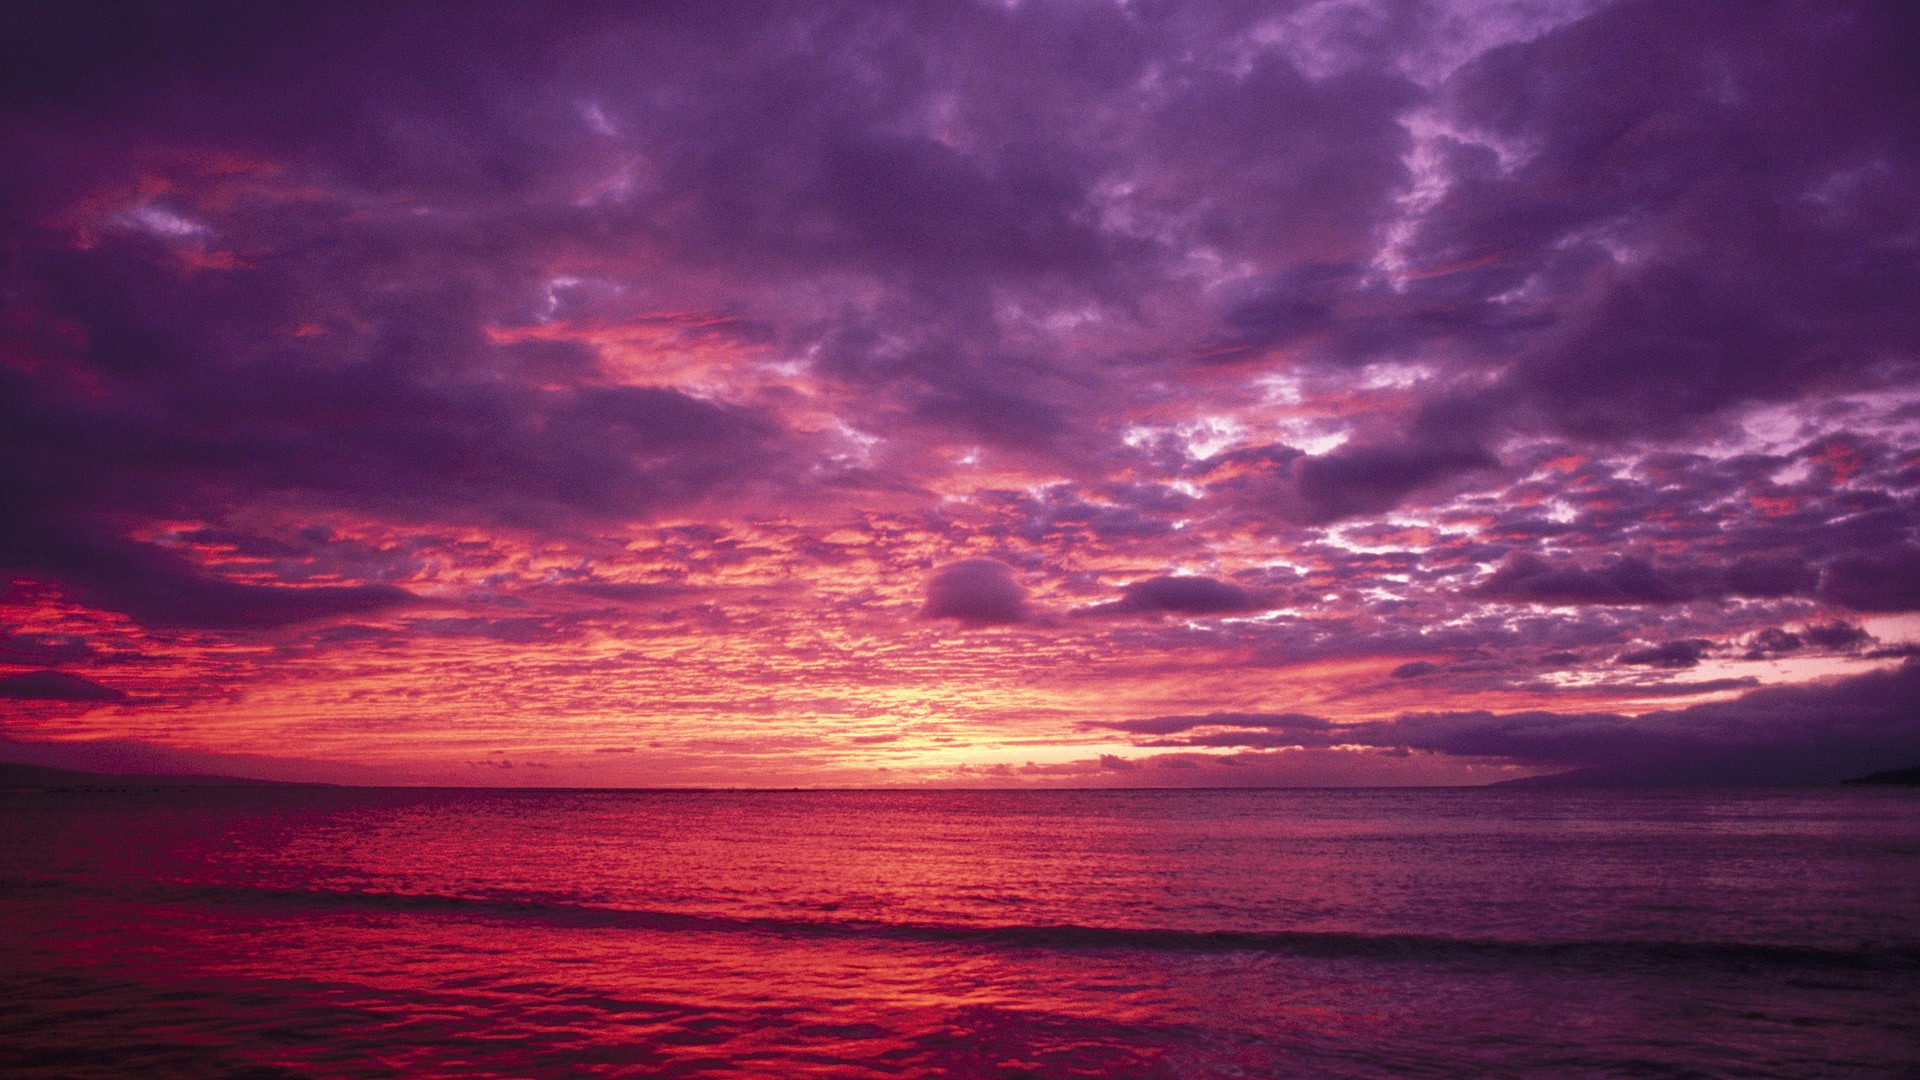 Maui Hawaii Free Wallpaper In Free Desktop Backgrounds - Sunset Background In Hawaii - HD Wallpaper 